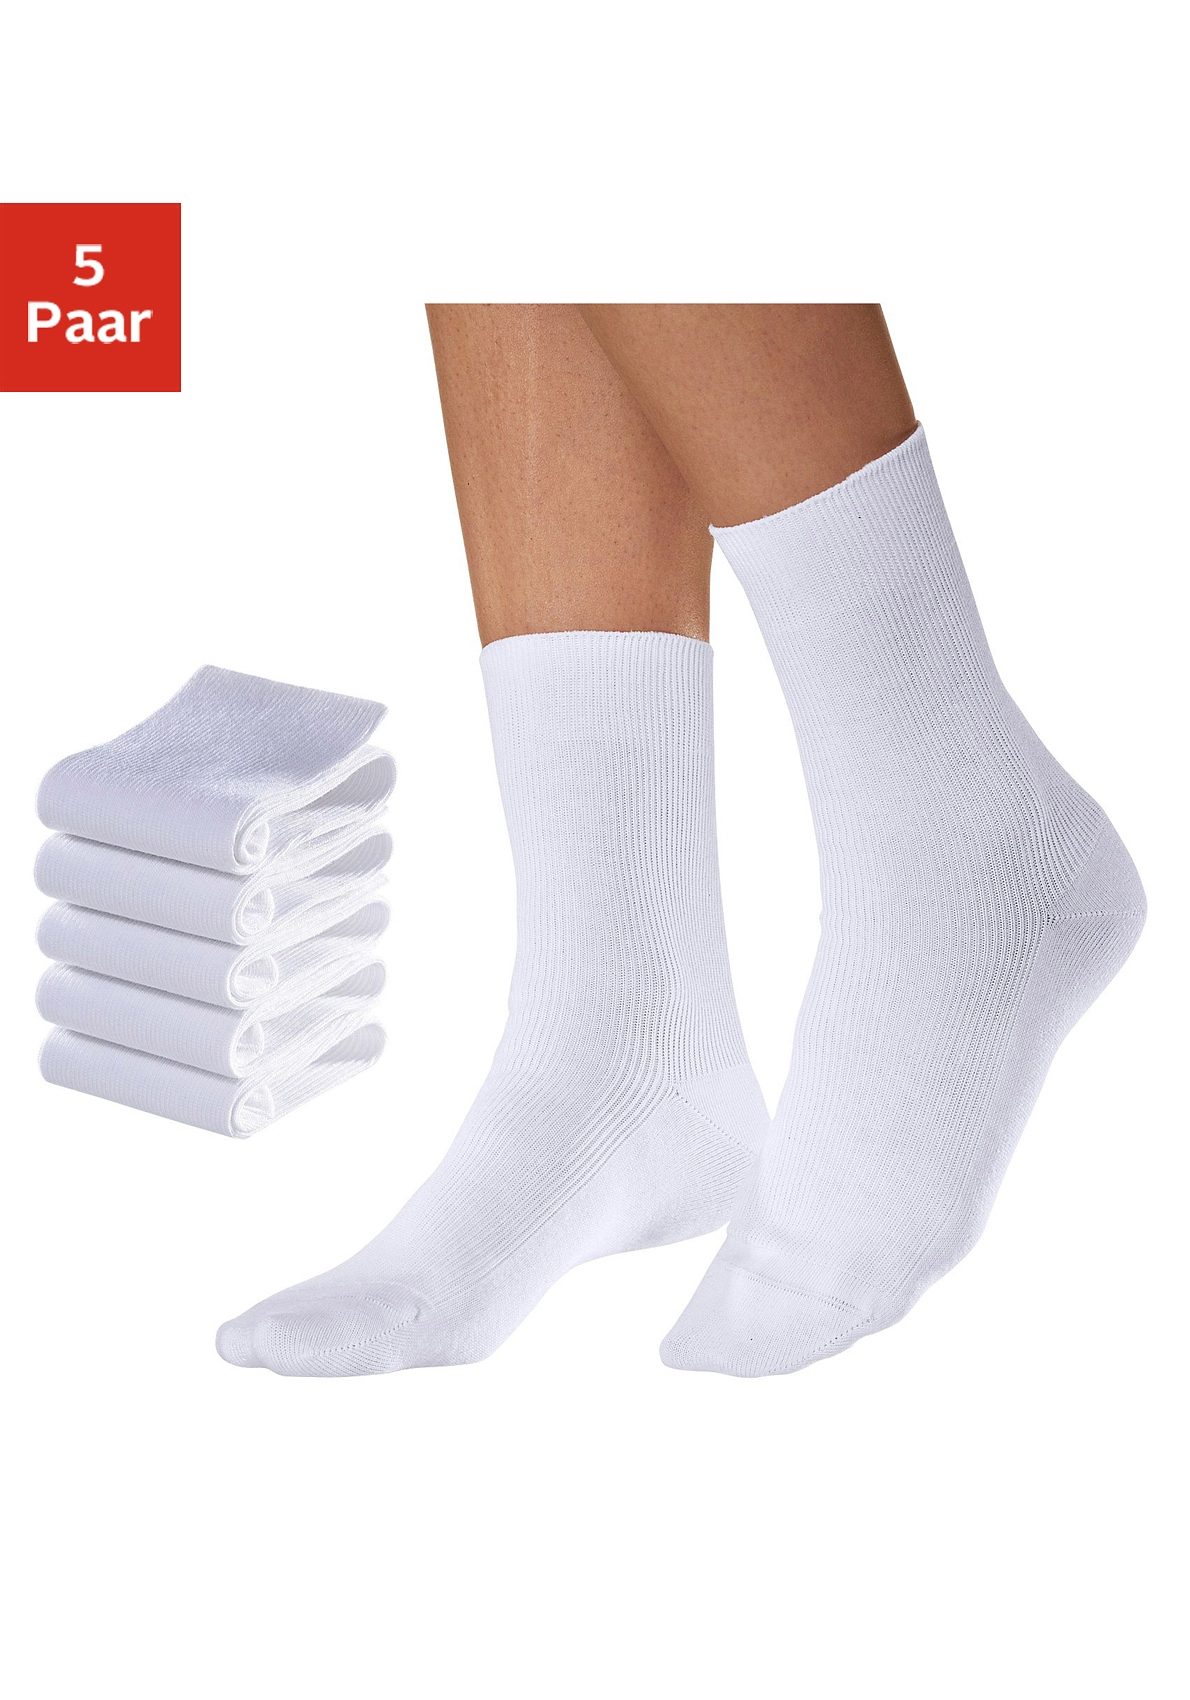 Go in Arbeitssocken, (5 Paar), für medizinische Berufe weiß Damen Arbeitssocken Socken Strümpfe Wäsche